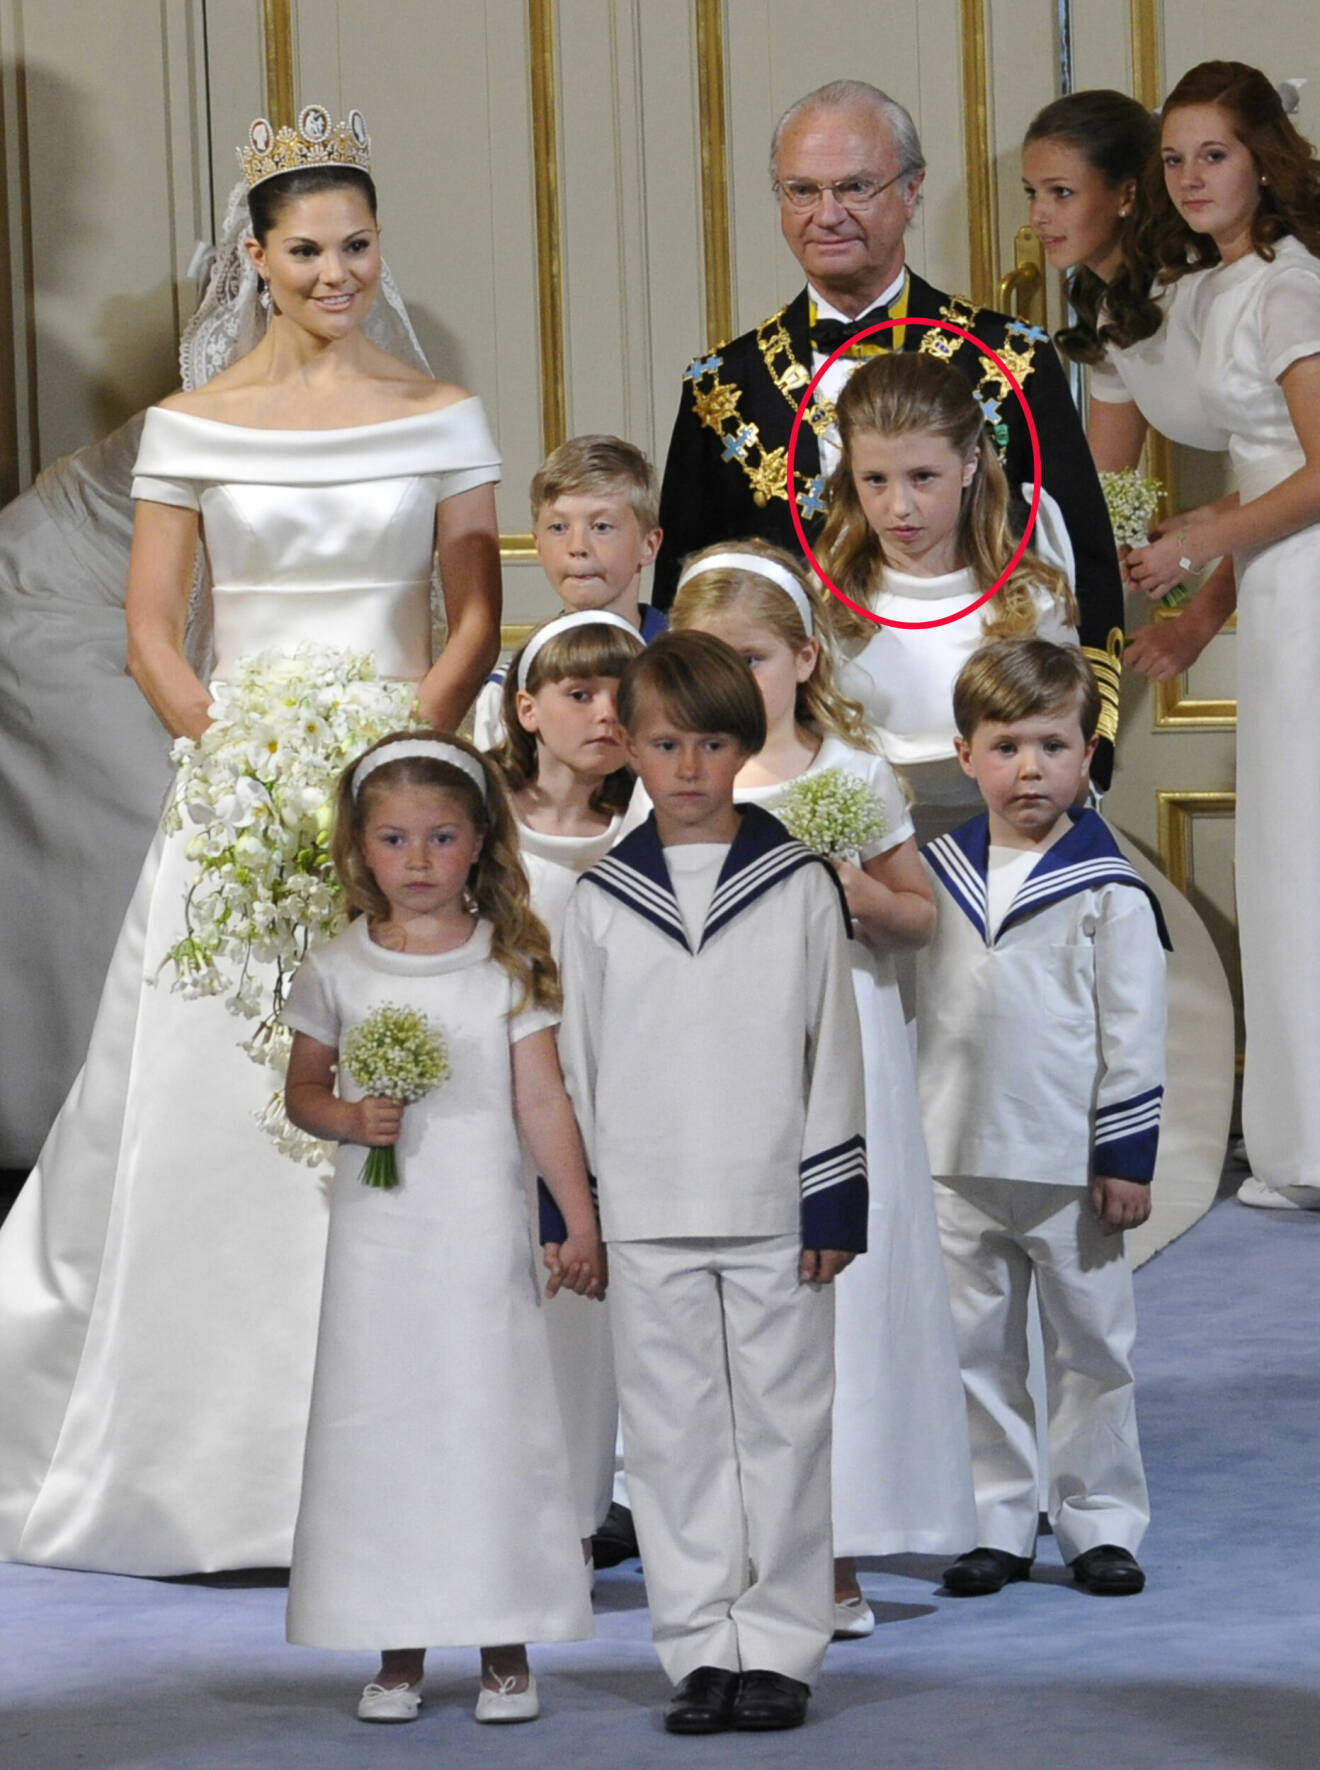 Kronprinsessan Victoria på sitt bröllop 2010 med de tio barnen i brudnäbbet